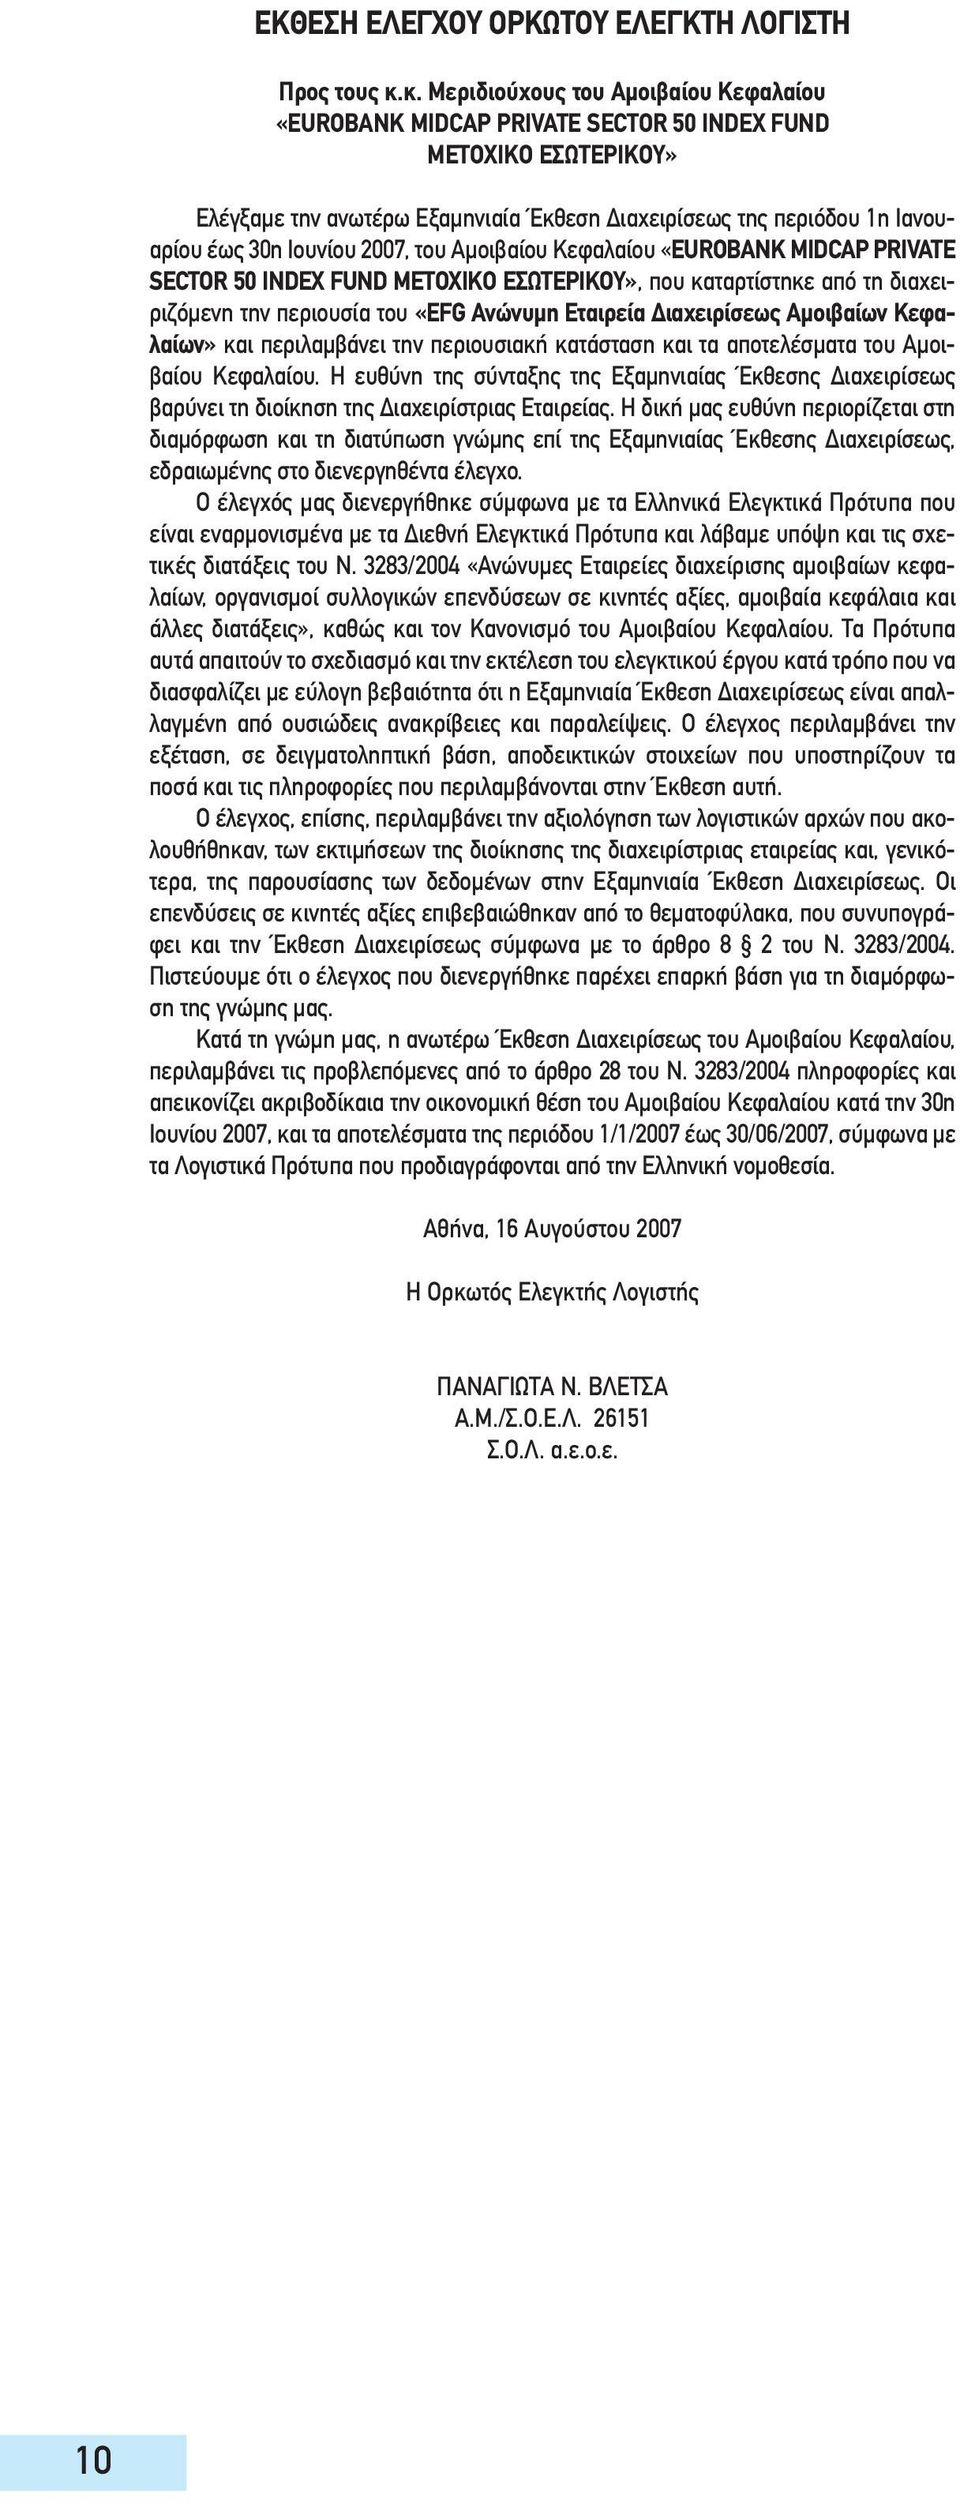 Ιουνίου 2007, του Αμοιβαίου Κεφαλαίου «EUROBANK MIDCAP PRIVATE SECTOR 50 INDEX FUND ΜΕΤΟΧΙΚΟ ΕΣΩΤΕΡΙΚΟΥ», που καταρτίστηκε από τη διαχειριζόμενη την περιουσία του «EFG Ανώνυμη Εταιρεία Διαχειρίσεως